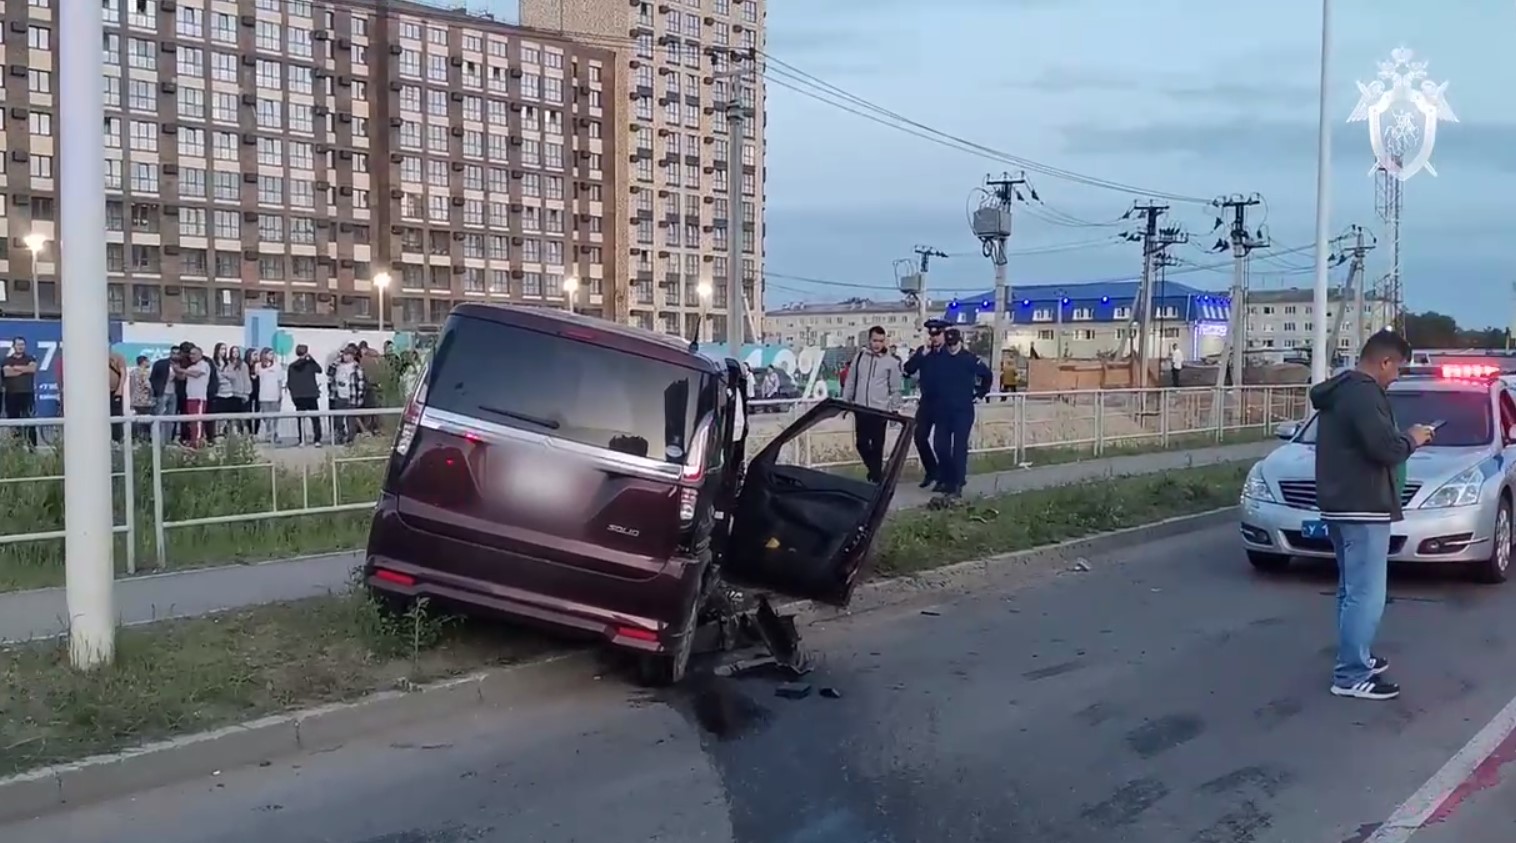 Причина трагедии не в оснащении улицы: министр транспорта о страшном ДТП в Благовещенске